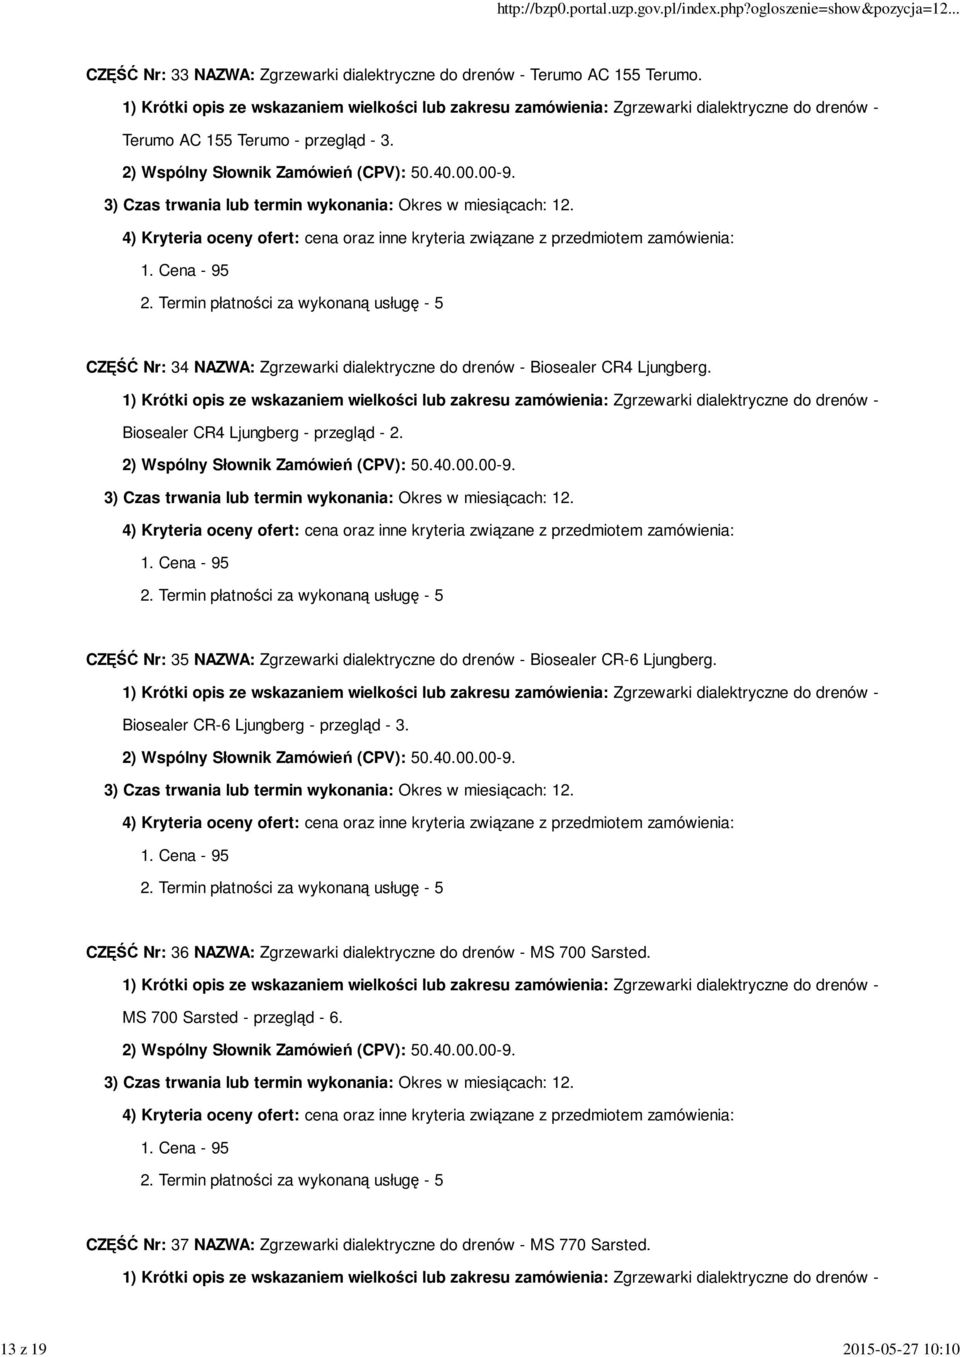 CZĘŚĆ Nr: 35 NAZWA: Zgrzewarki dialektryczne do drenów - Biosealer CR-6 Ljungberg. Biosealer CR-6 Ljungberg - przegląd - 3.